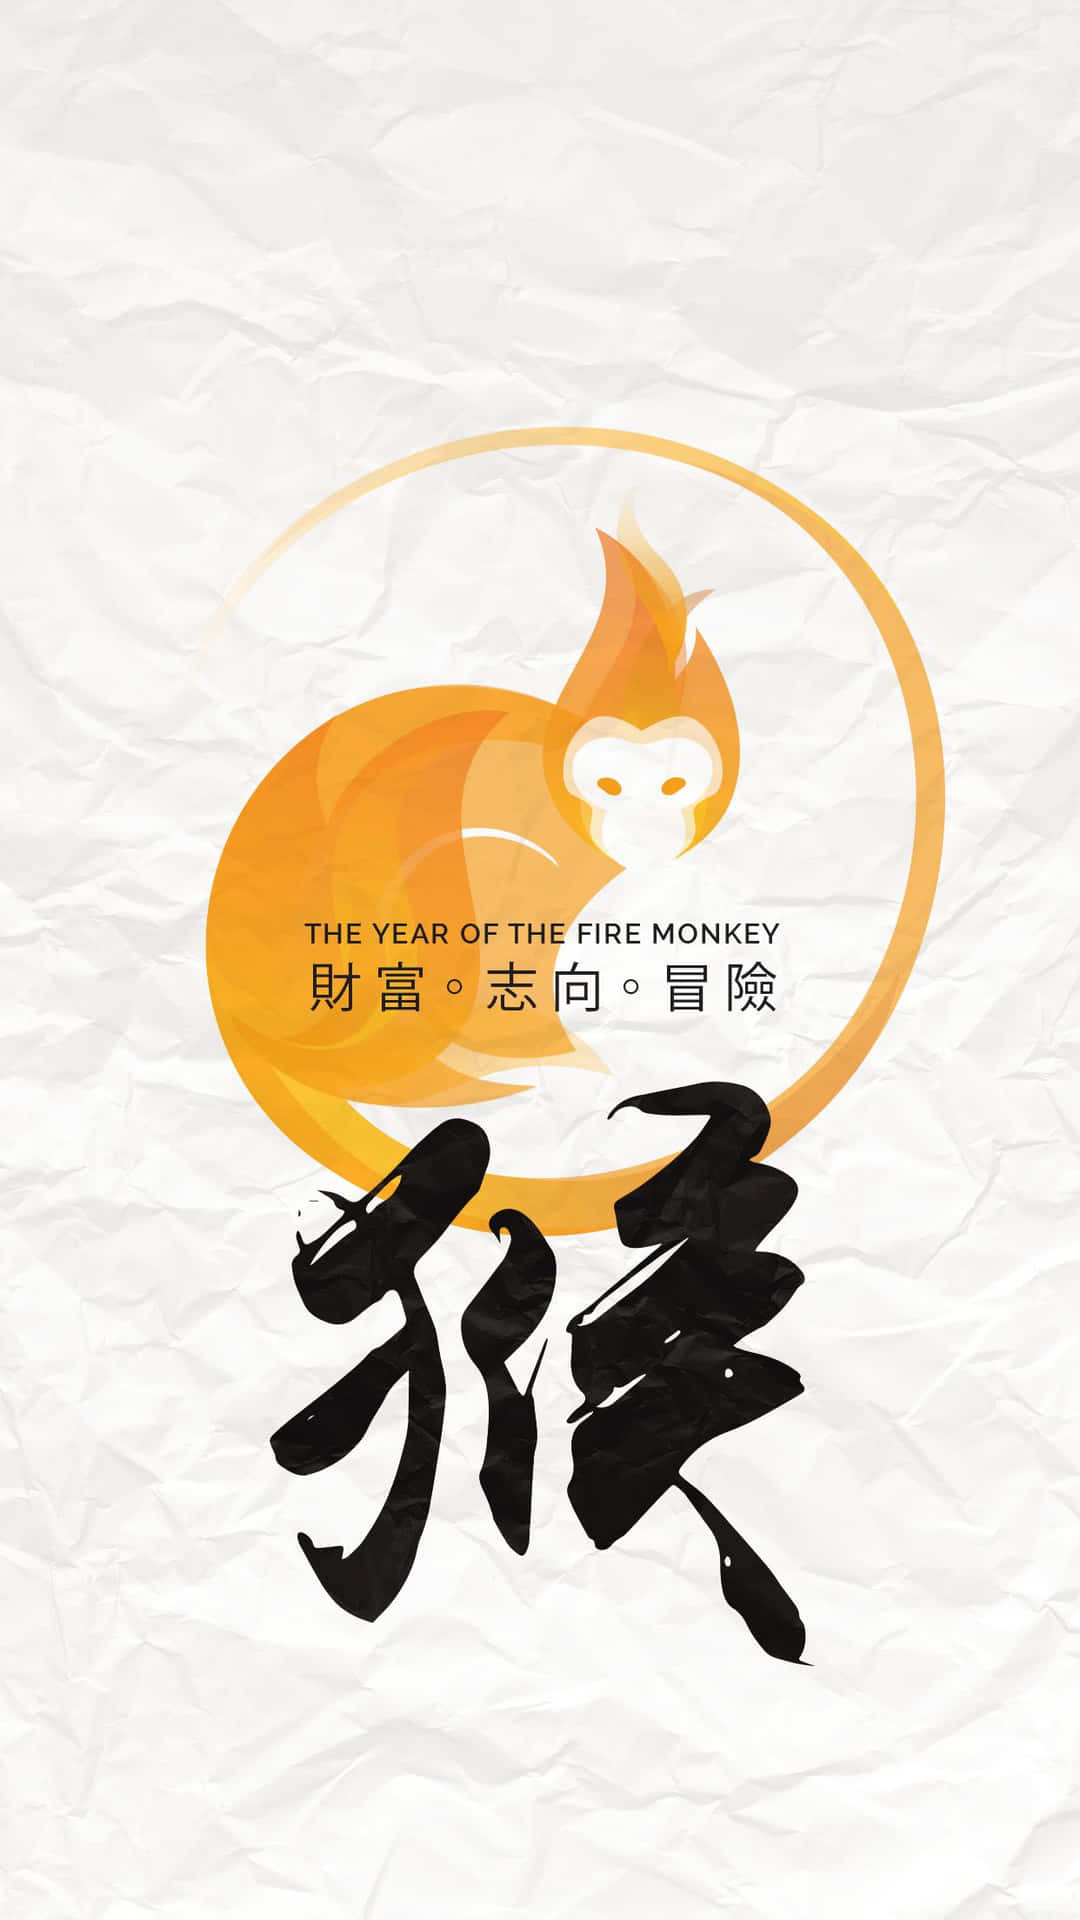 Feiernsie Das Chinesische Neujahr Mit Einem Neuen Iphone! Wallpaper